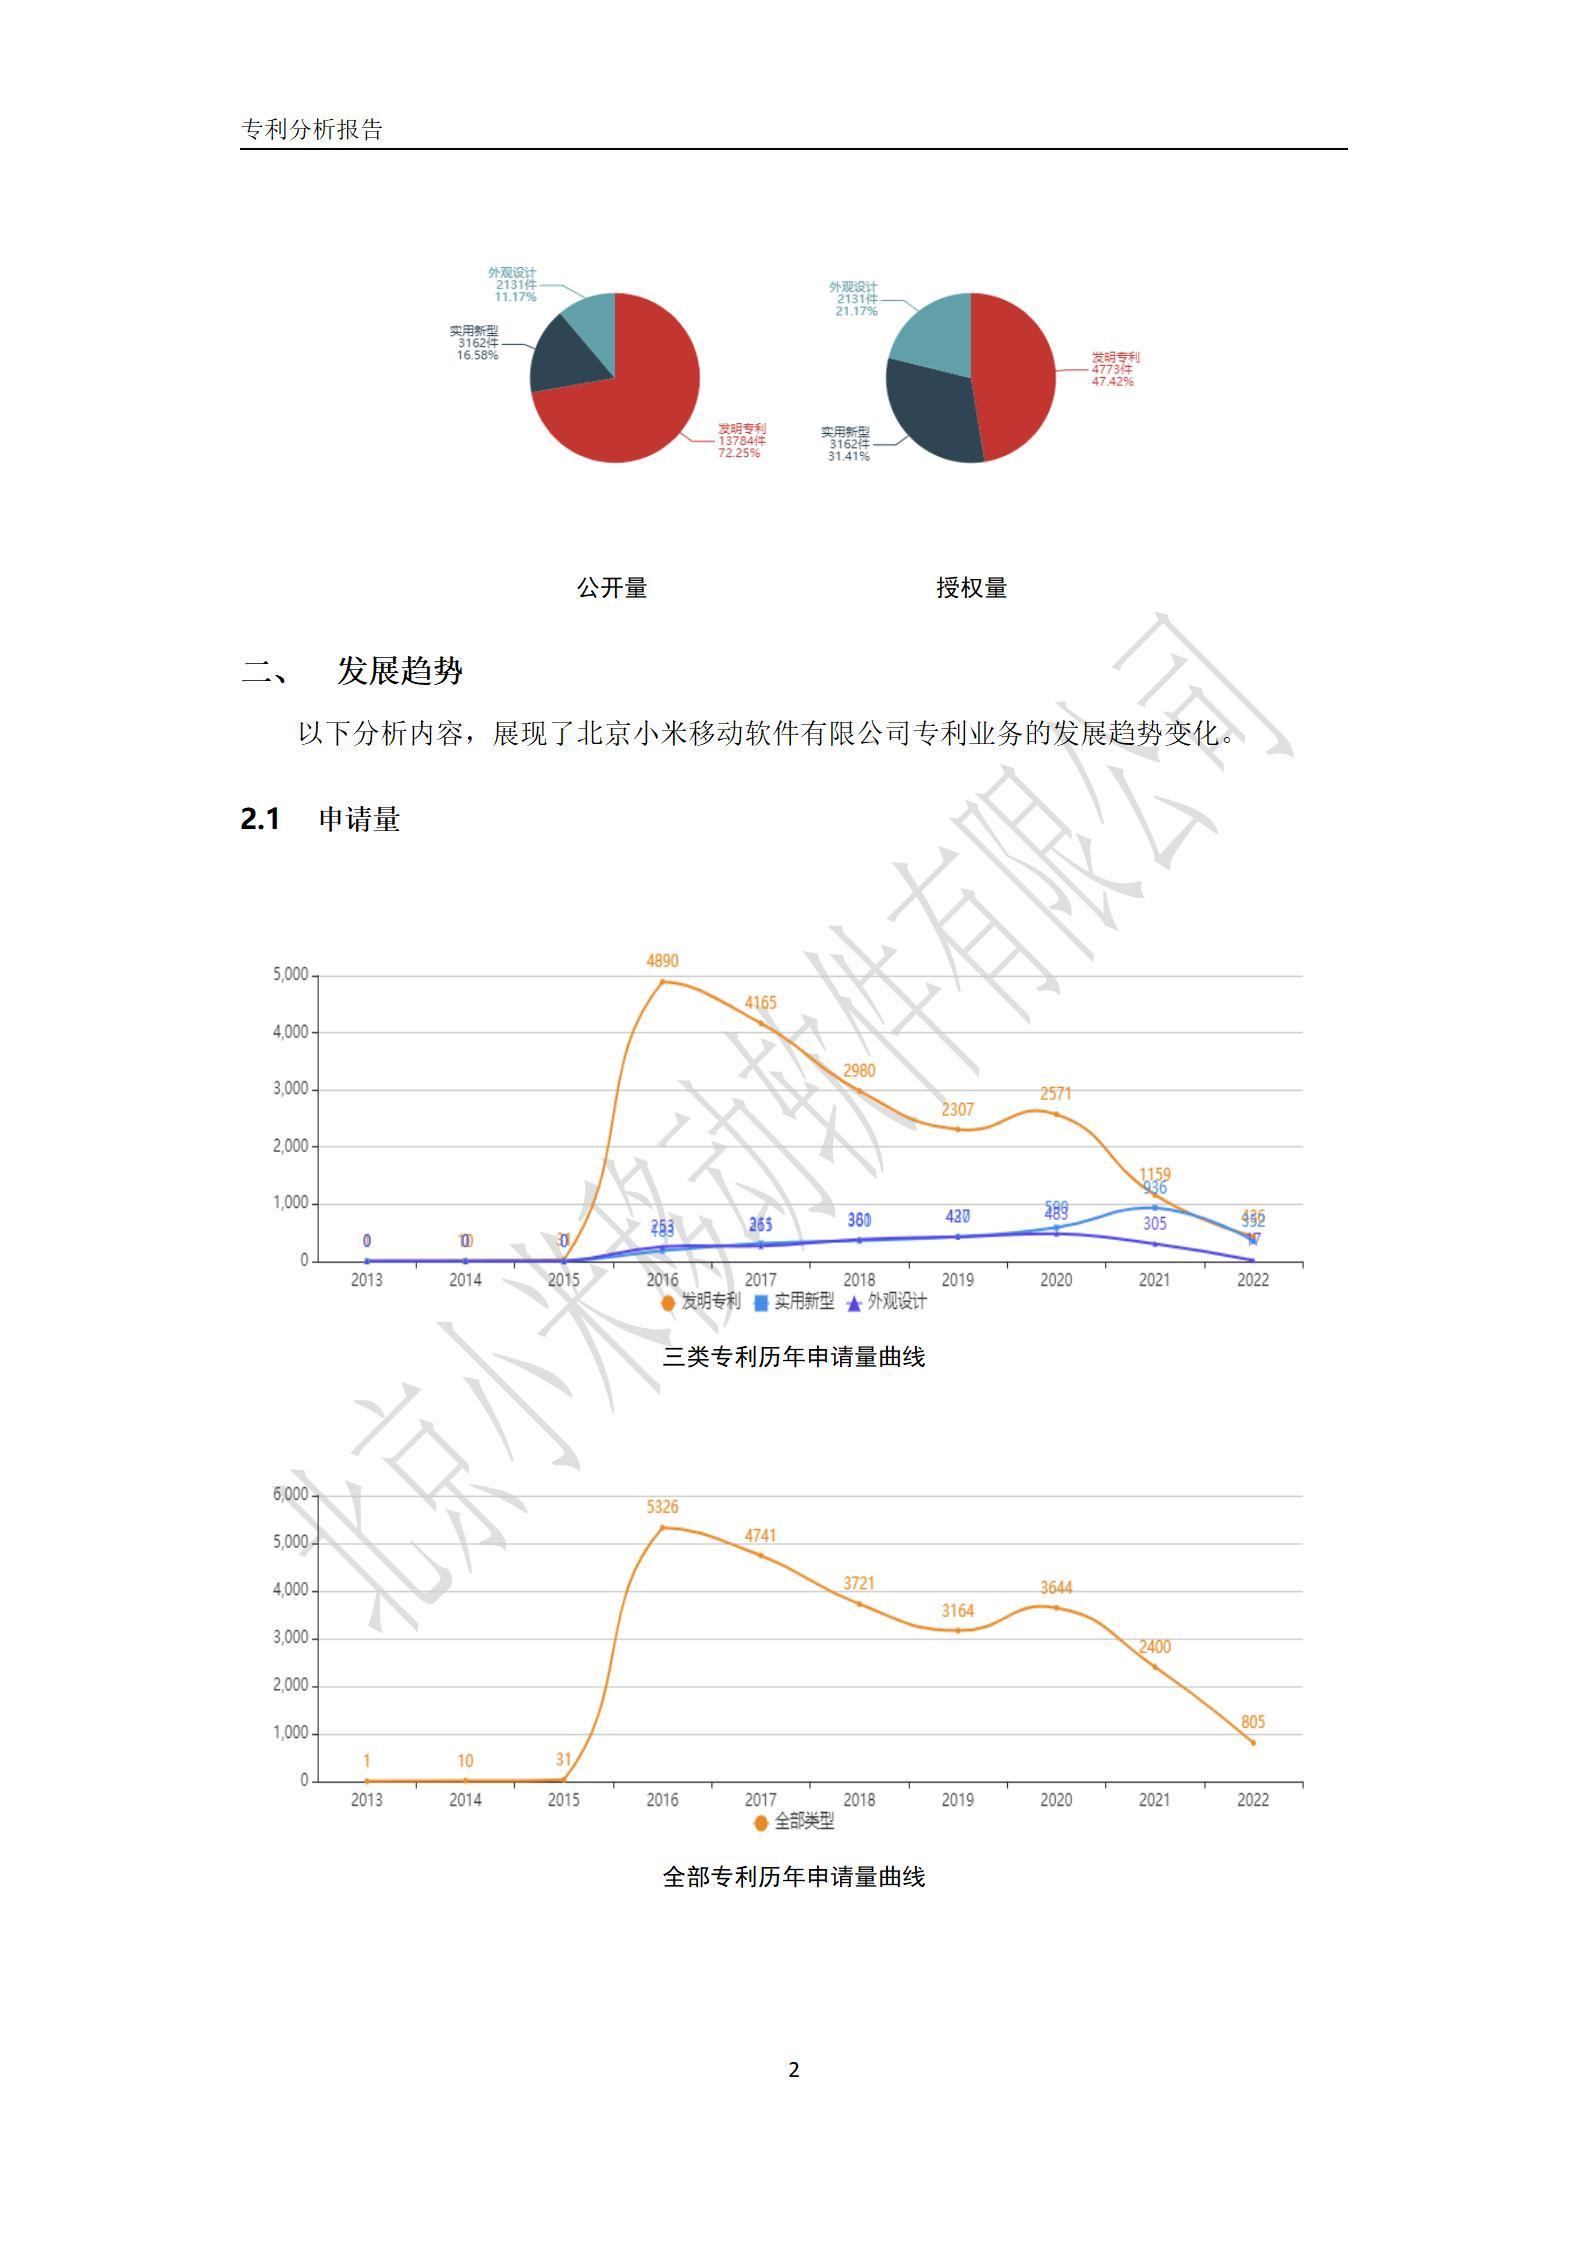 北京小米移动软件有限公司专利分析报告-2.jpg